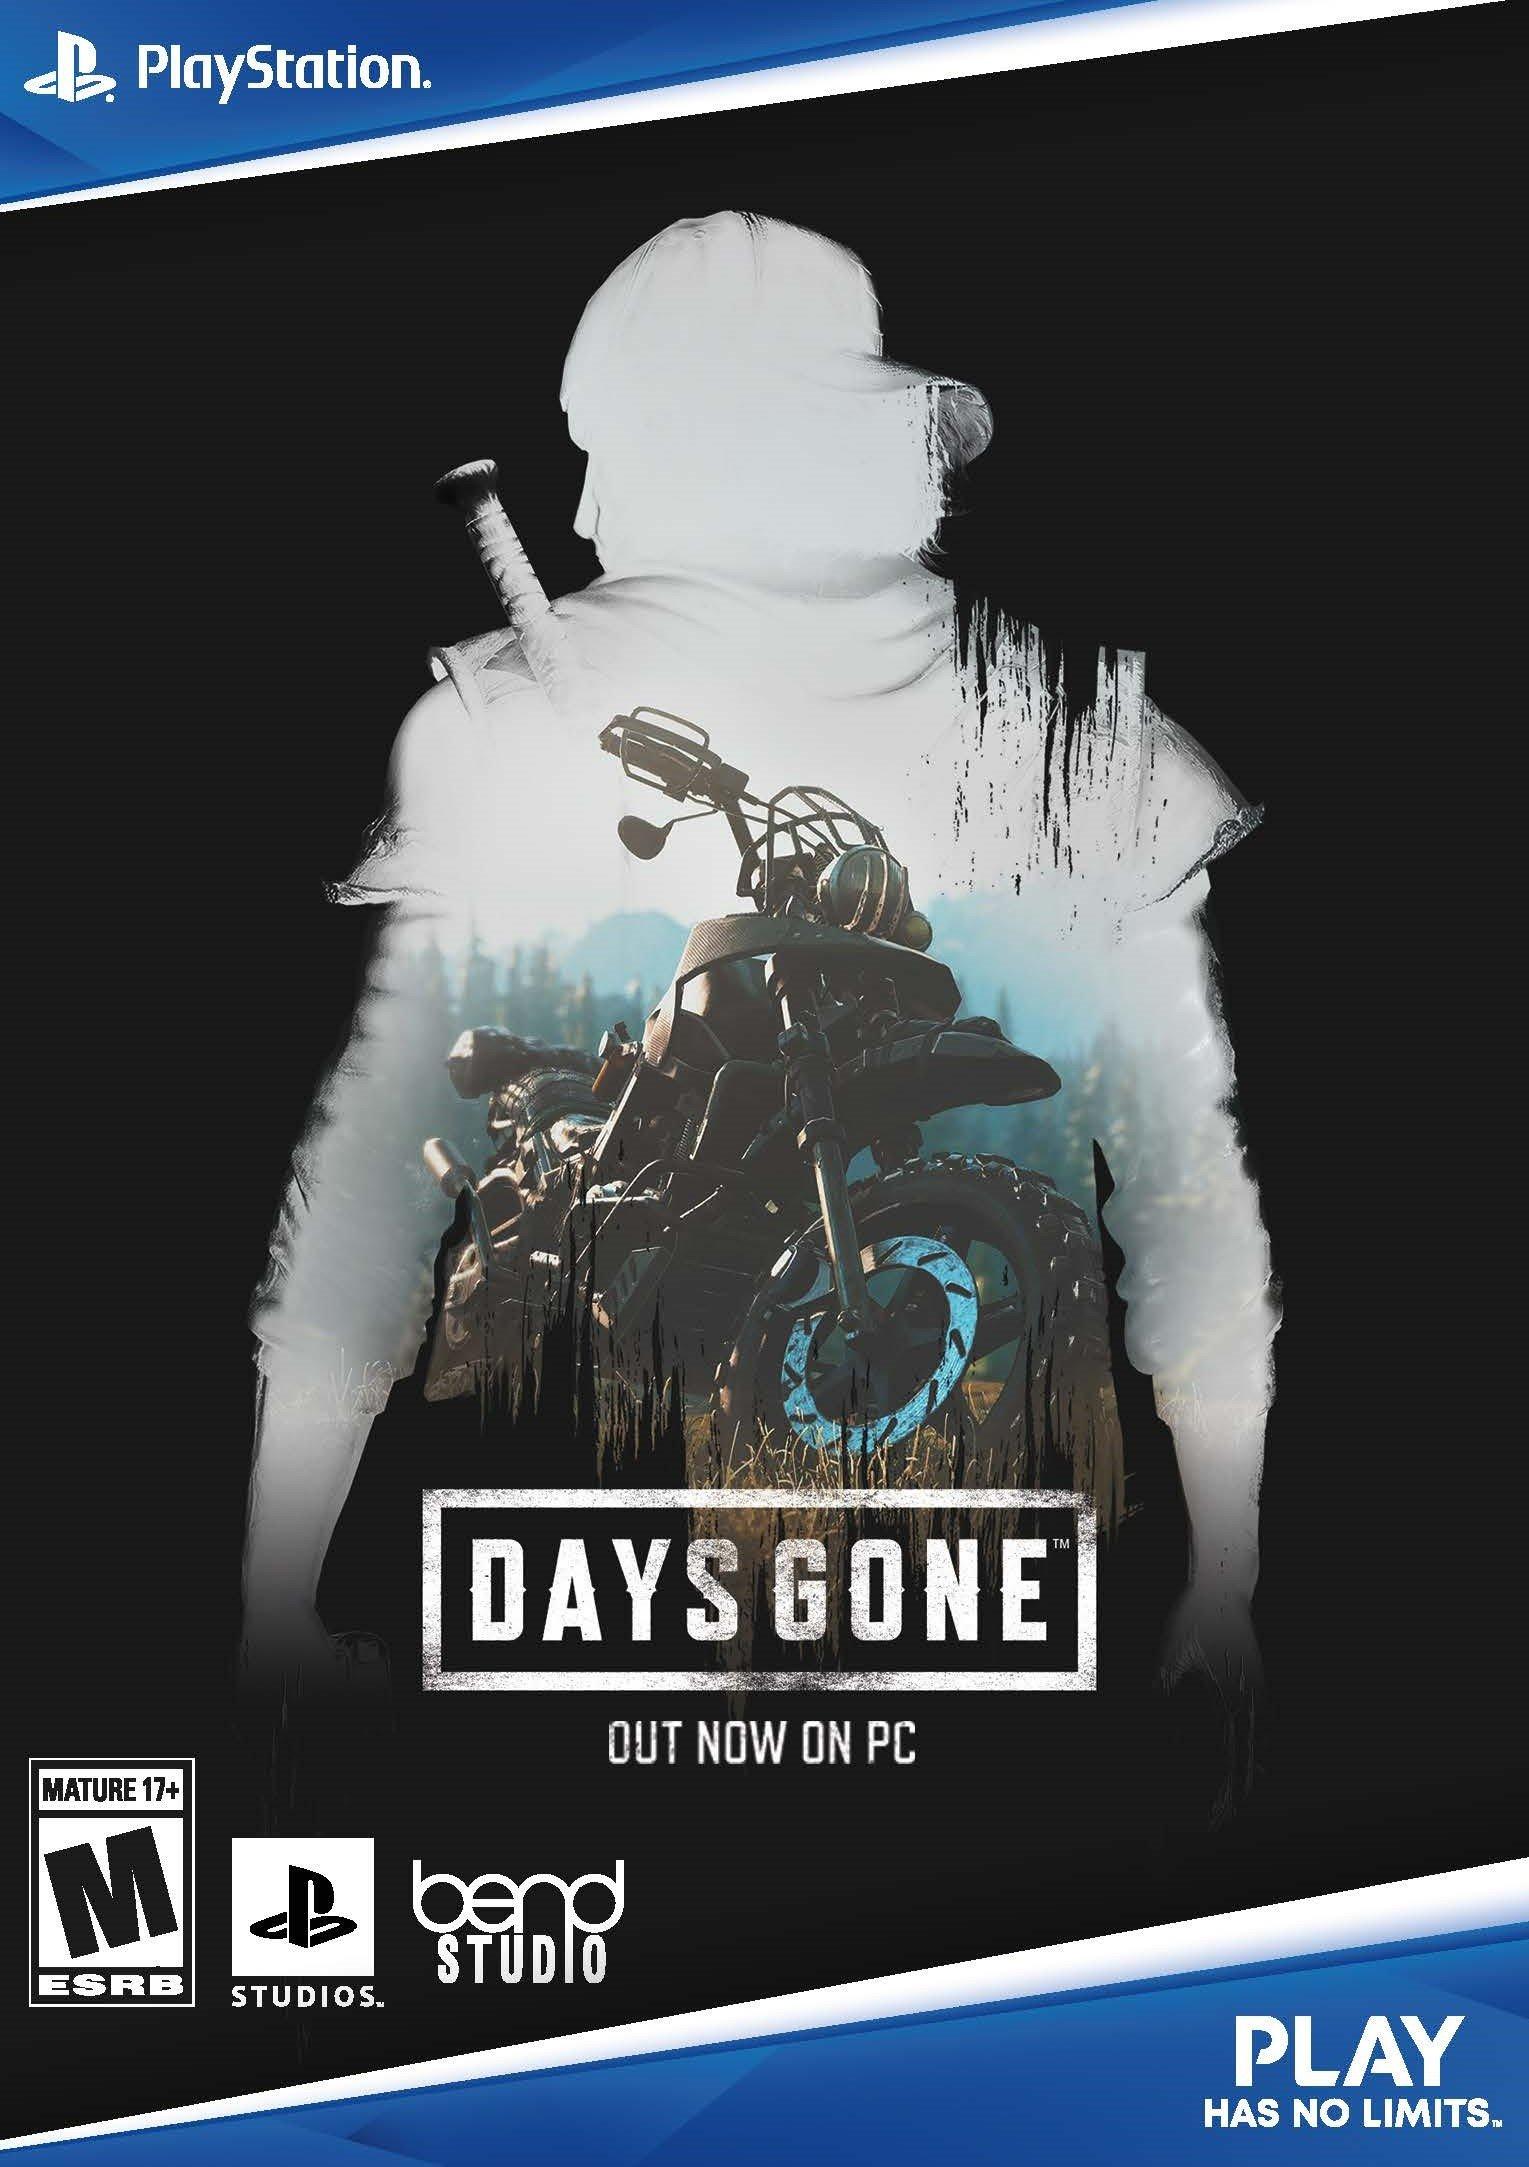 Days Gone Sony PS4 Playstation 4 Outlaw Biker Zombie Apocalypse